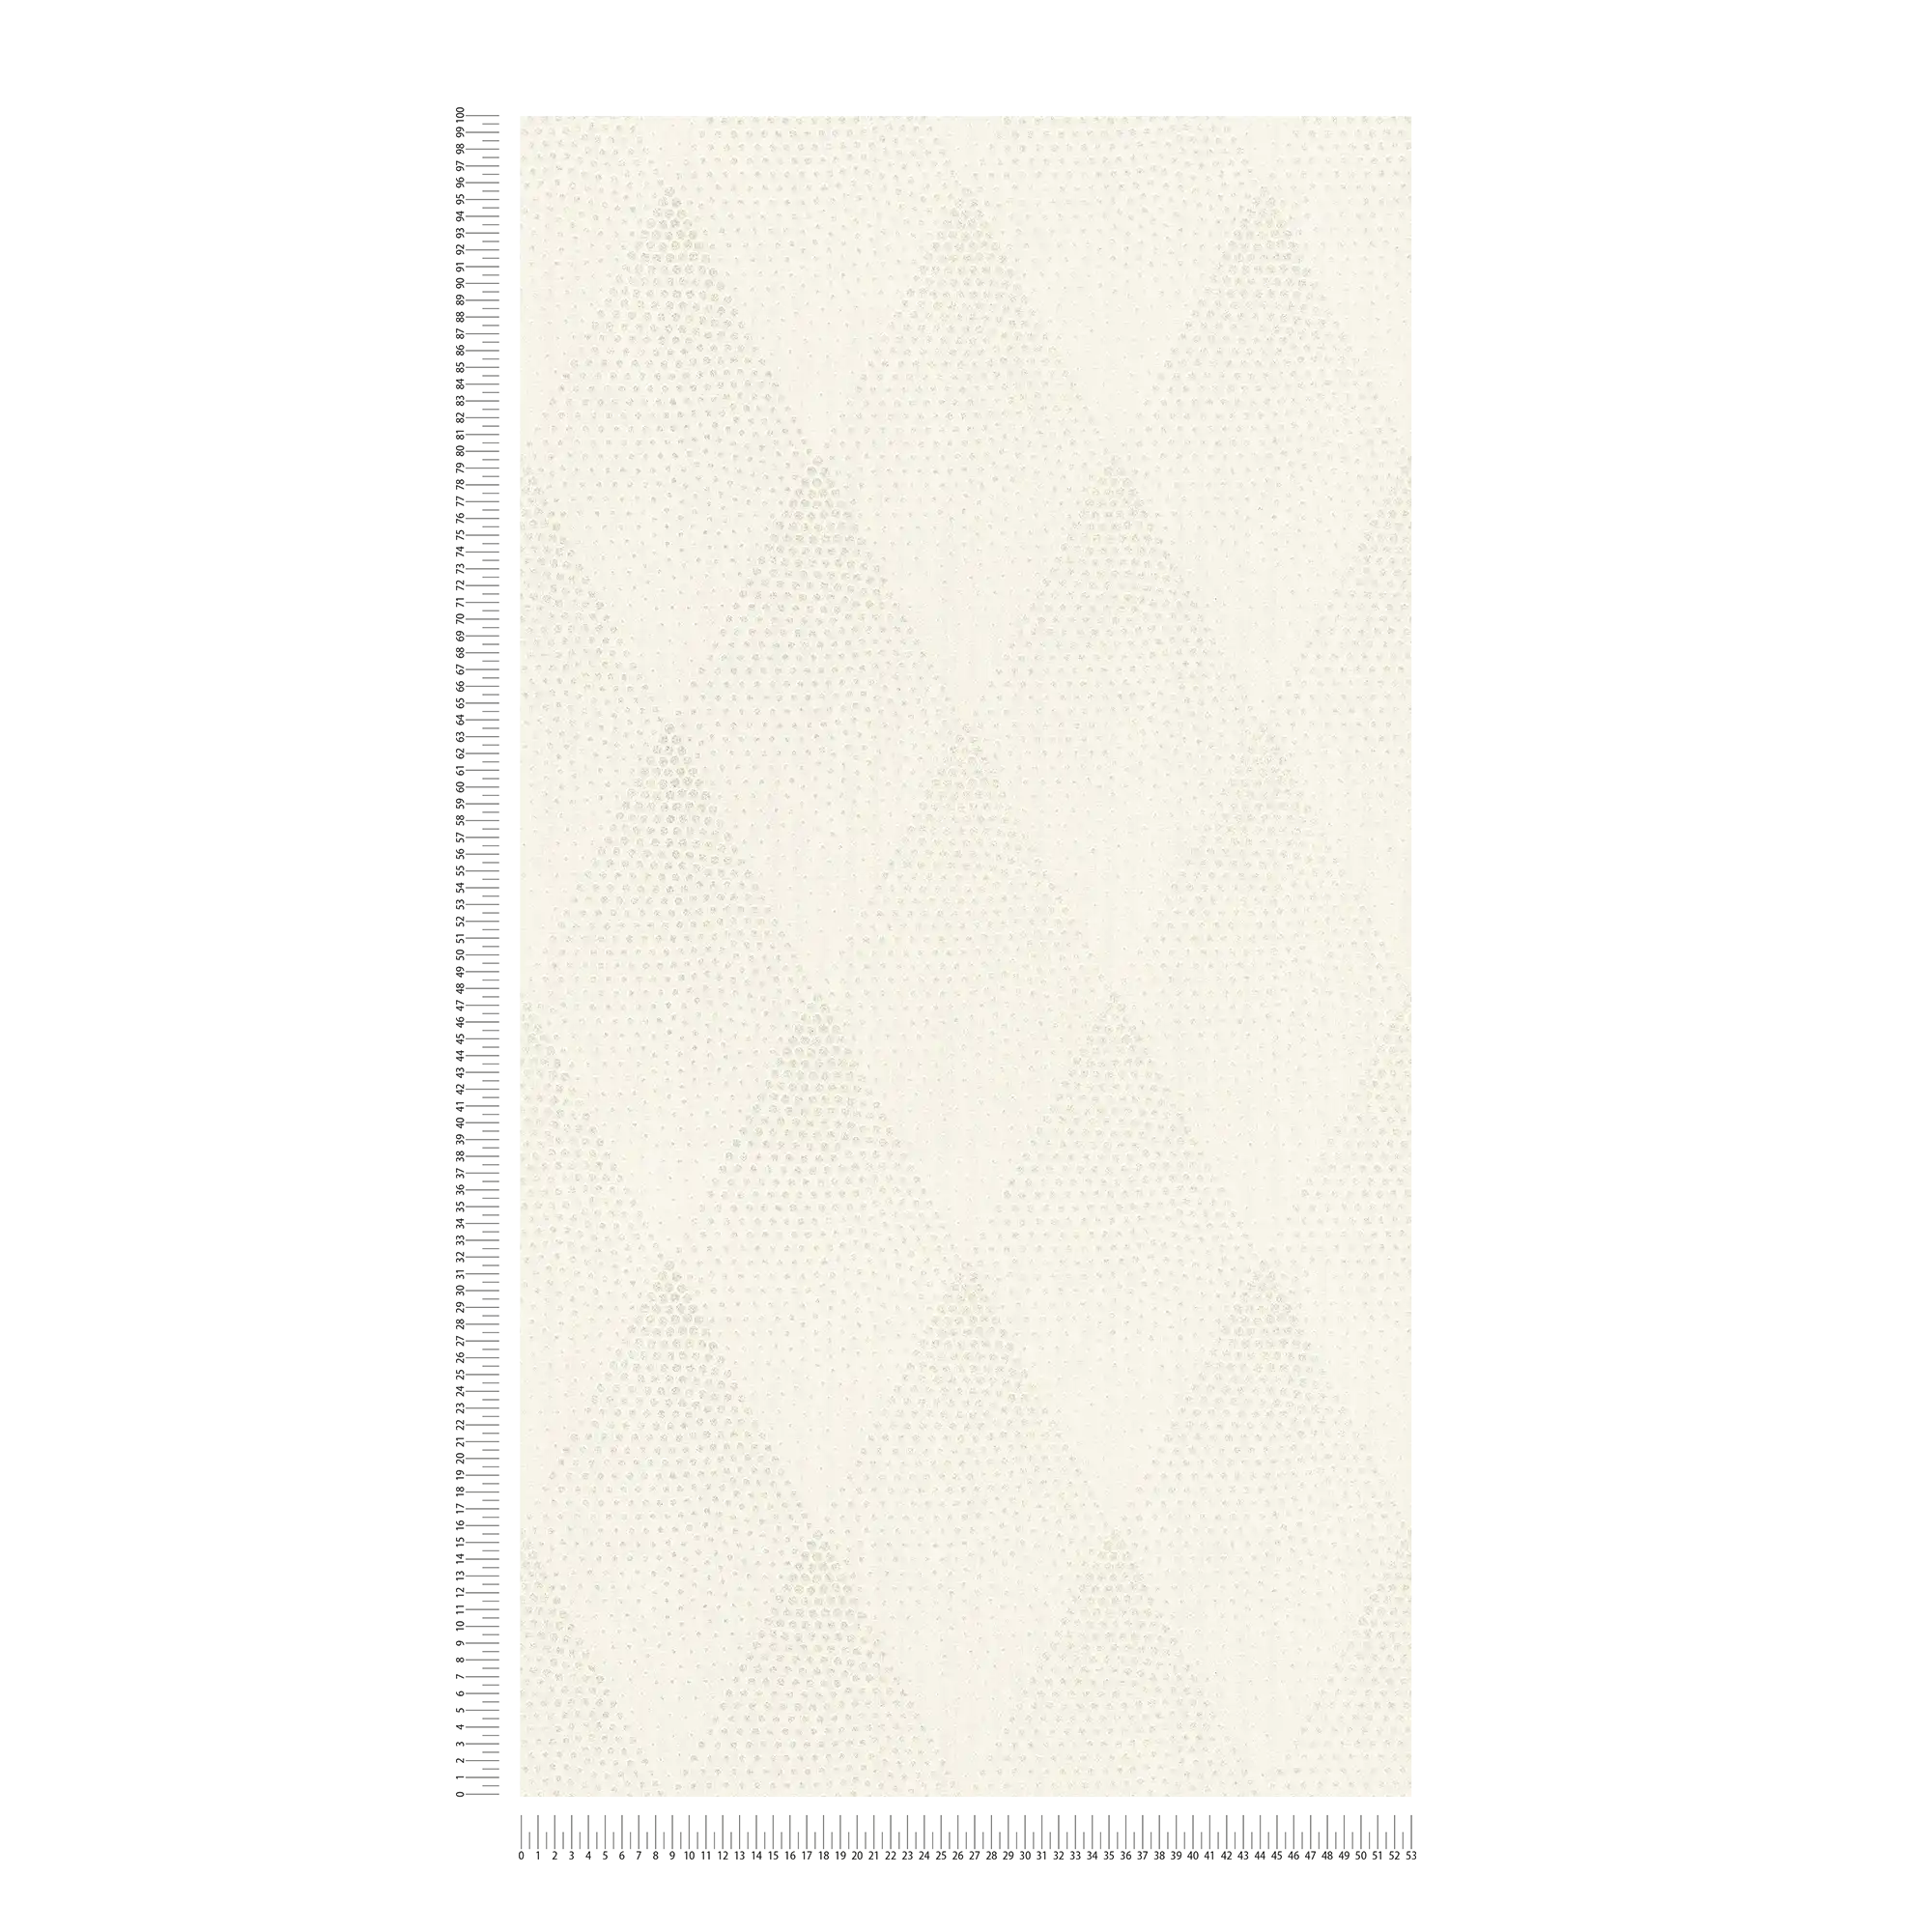             Punkte-Tapete Glitzer Effekt im Retro Stil – Weiß, Silber, Grau
        